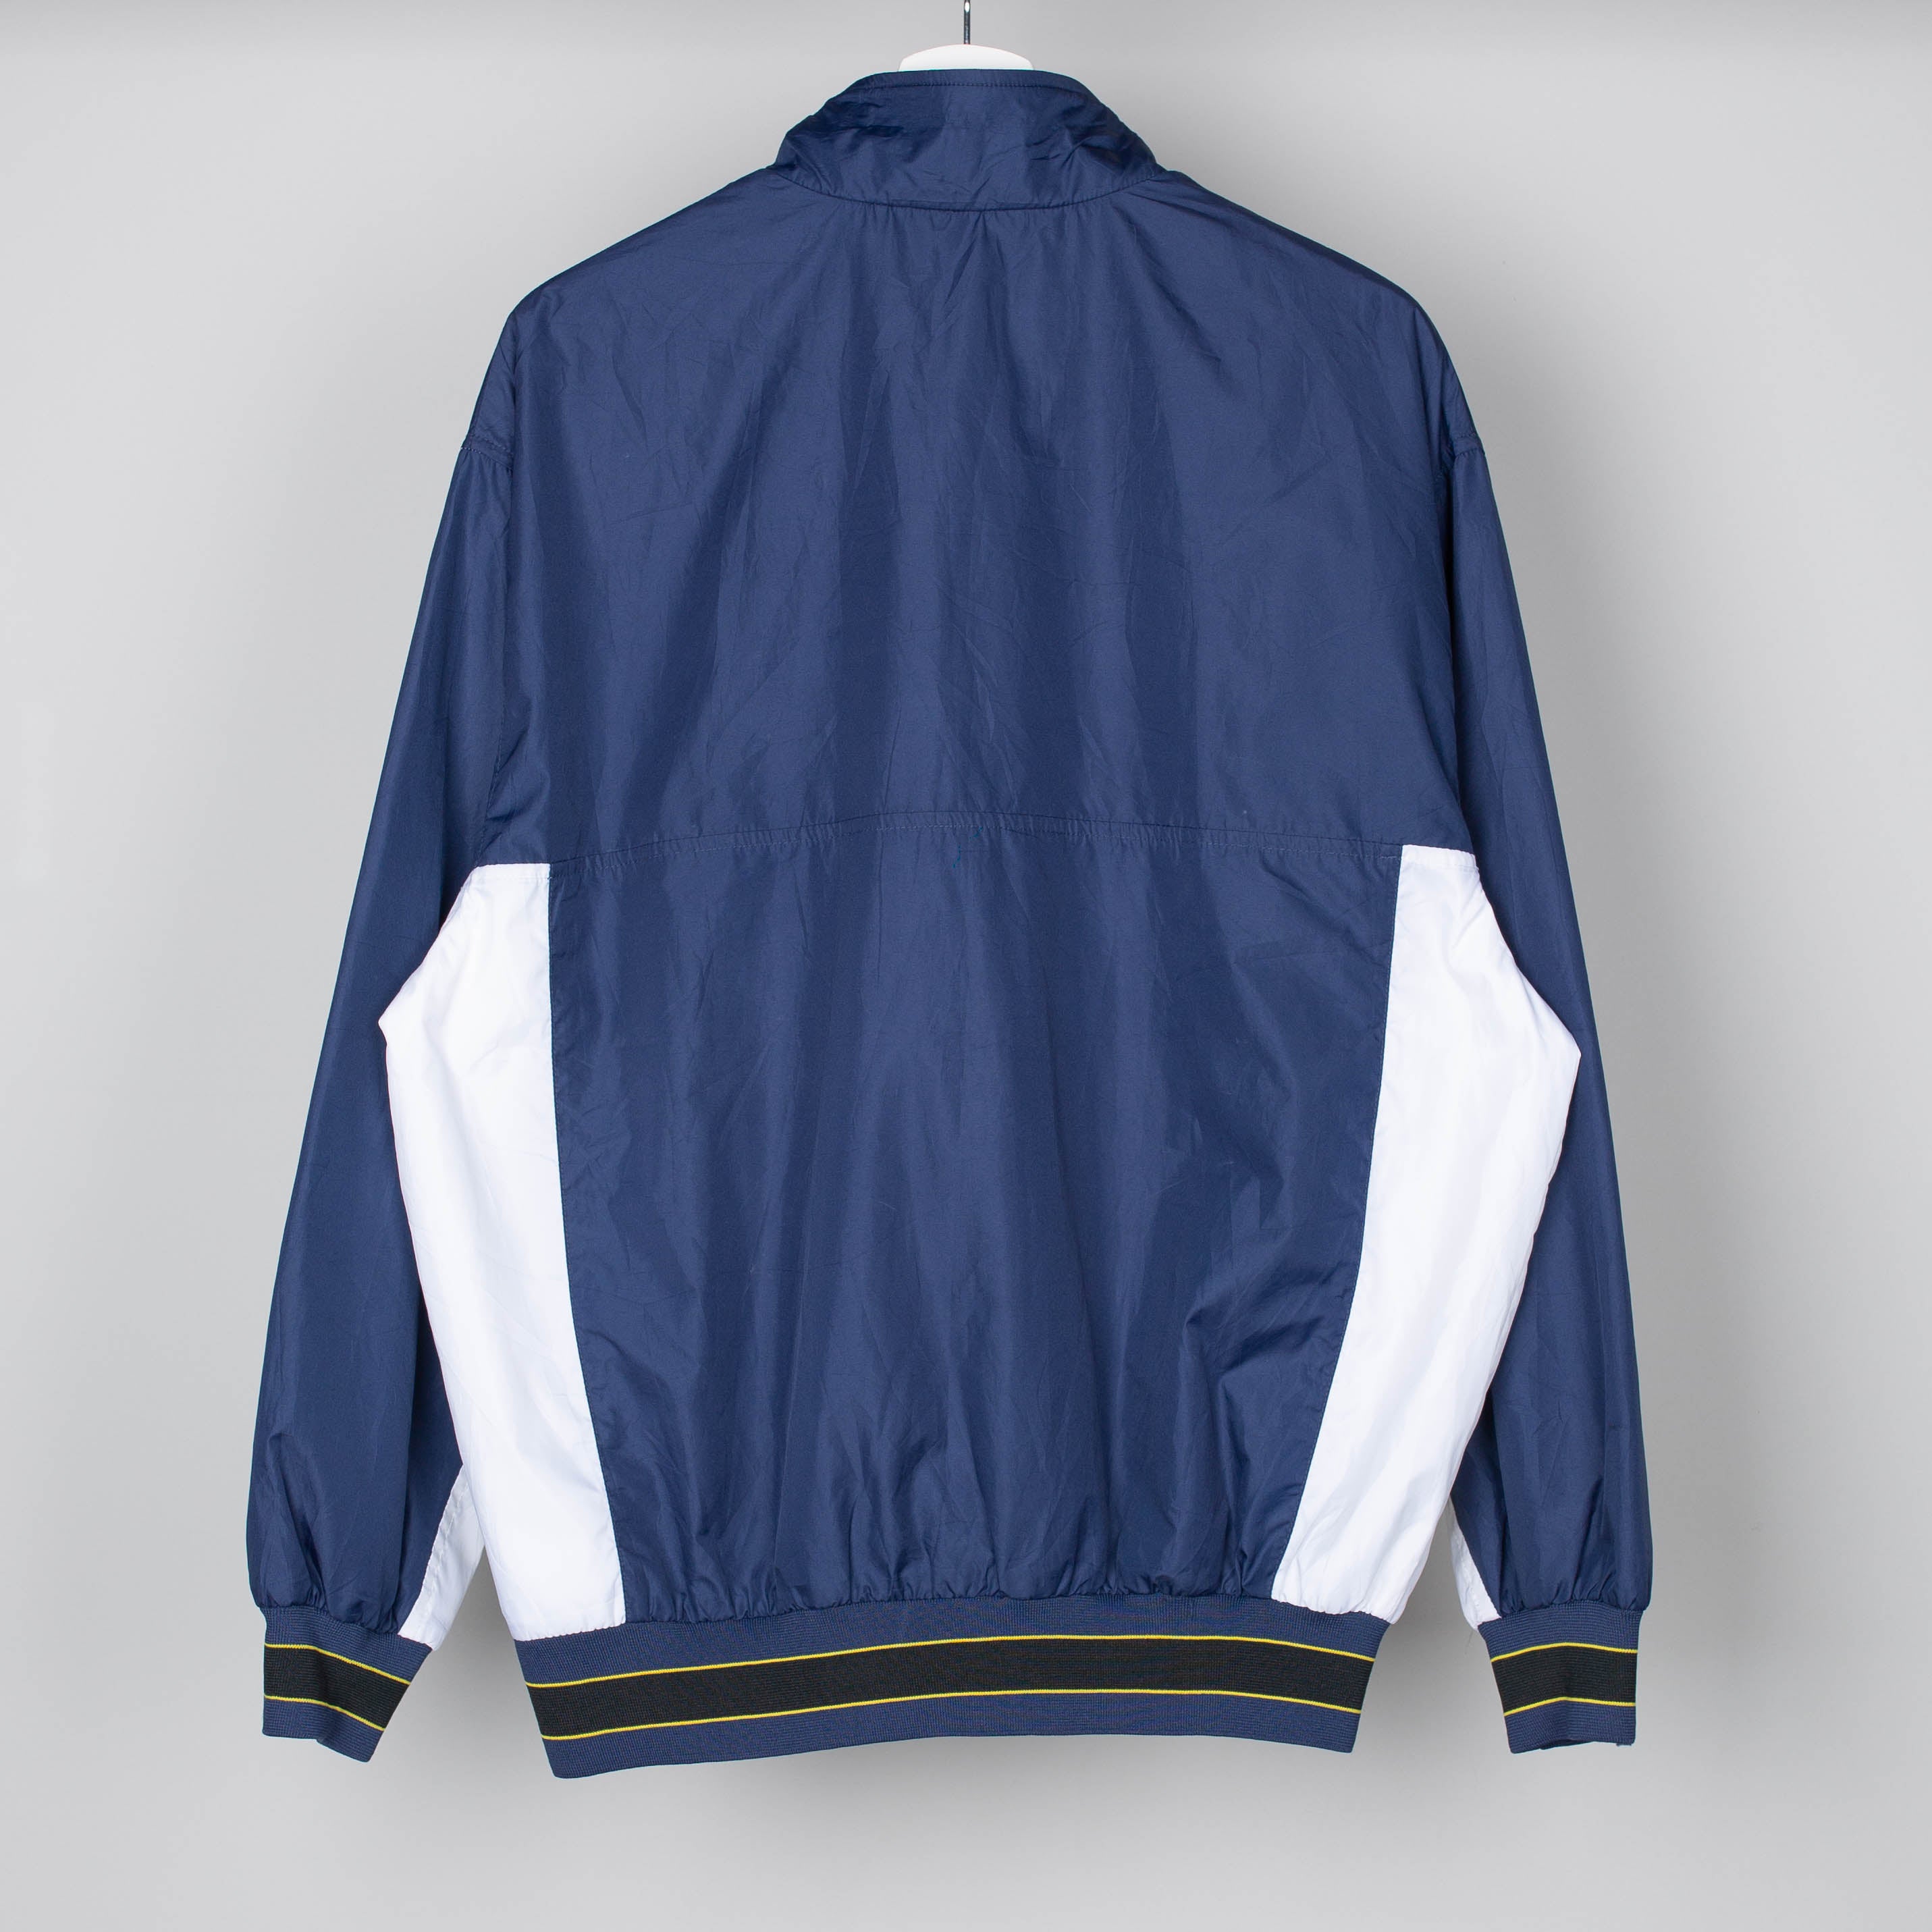 90's Navy Blue Windbreaker Jacket Size M